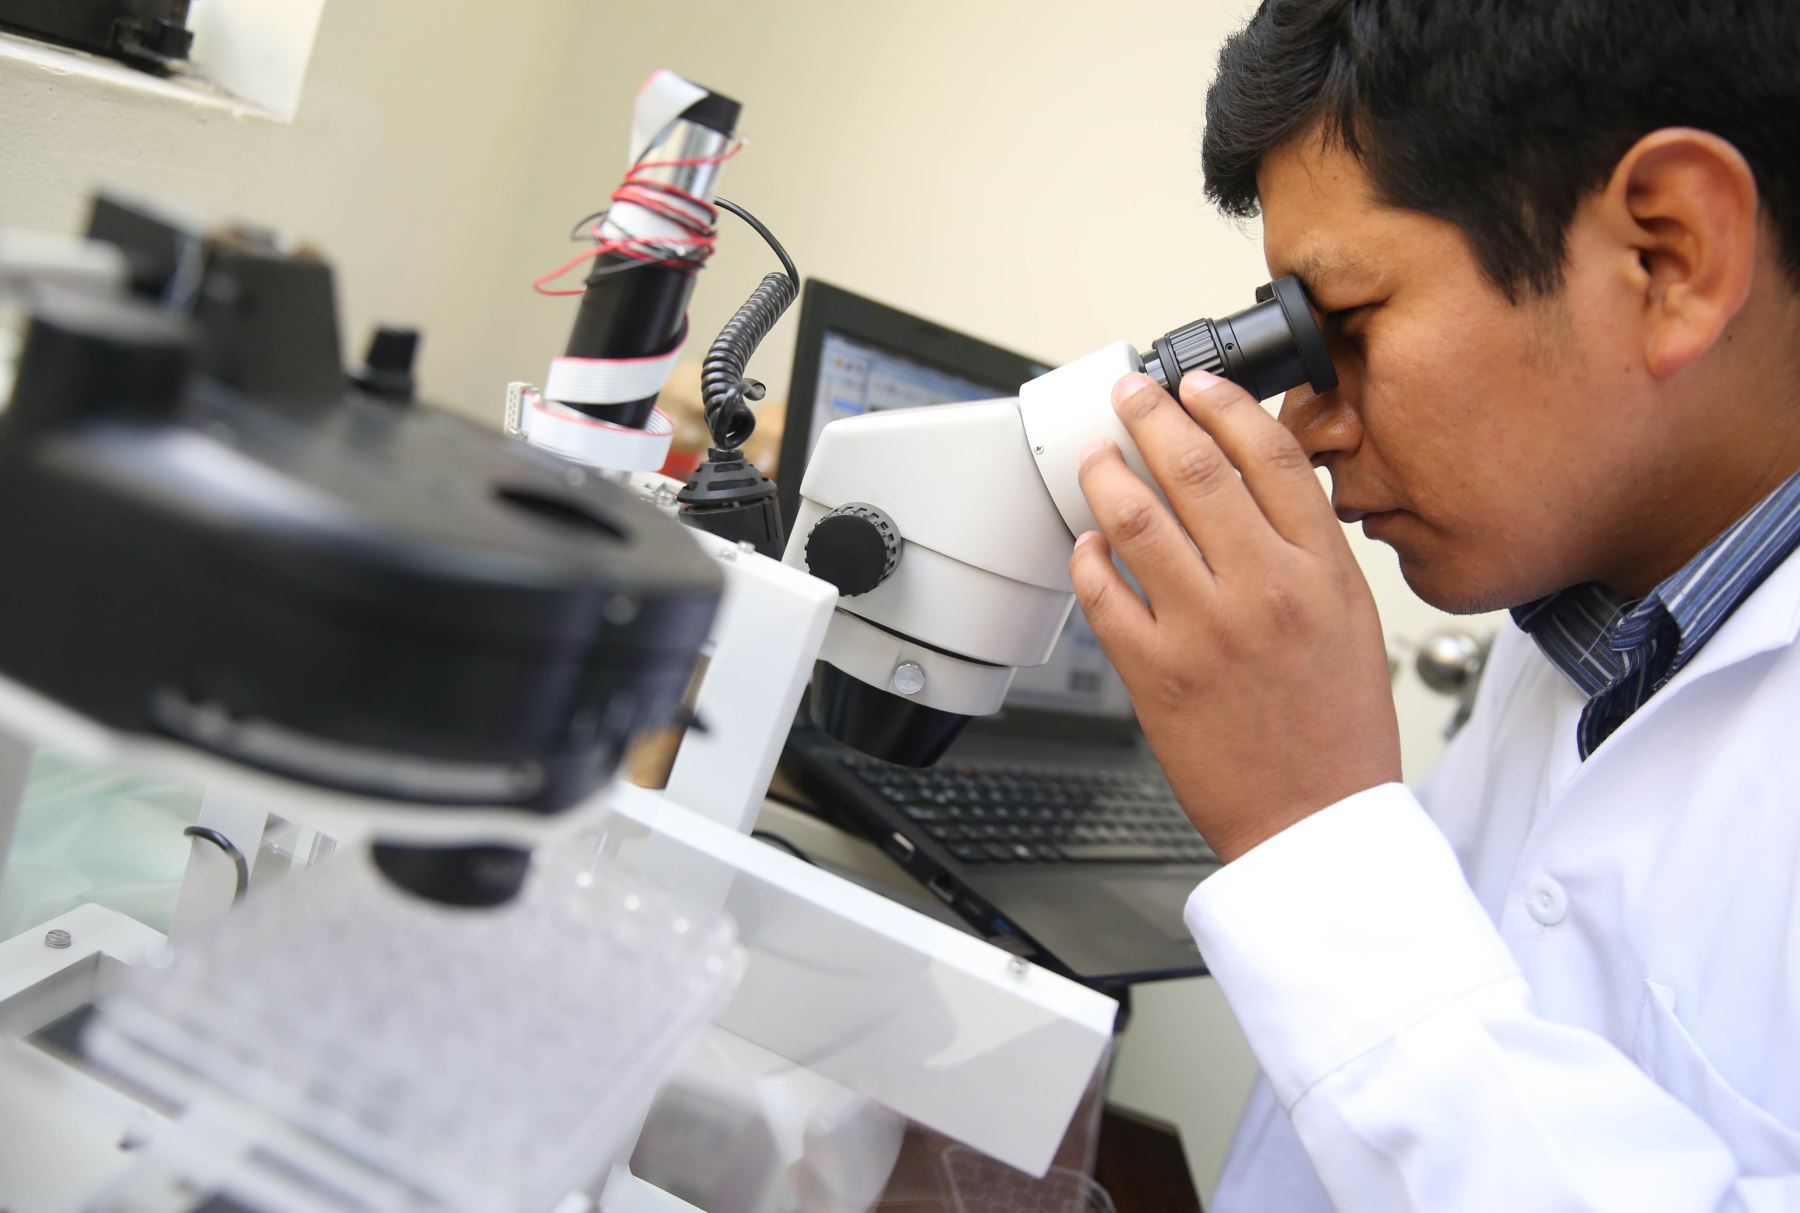 Científicos peruanos diseñan máquina de microgravedad  que ayudará a conocer el cambio de células cancerígenas en células sanasFoto: ANDINA/Oscar Farje Gomero.